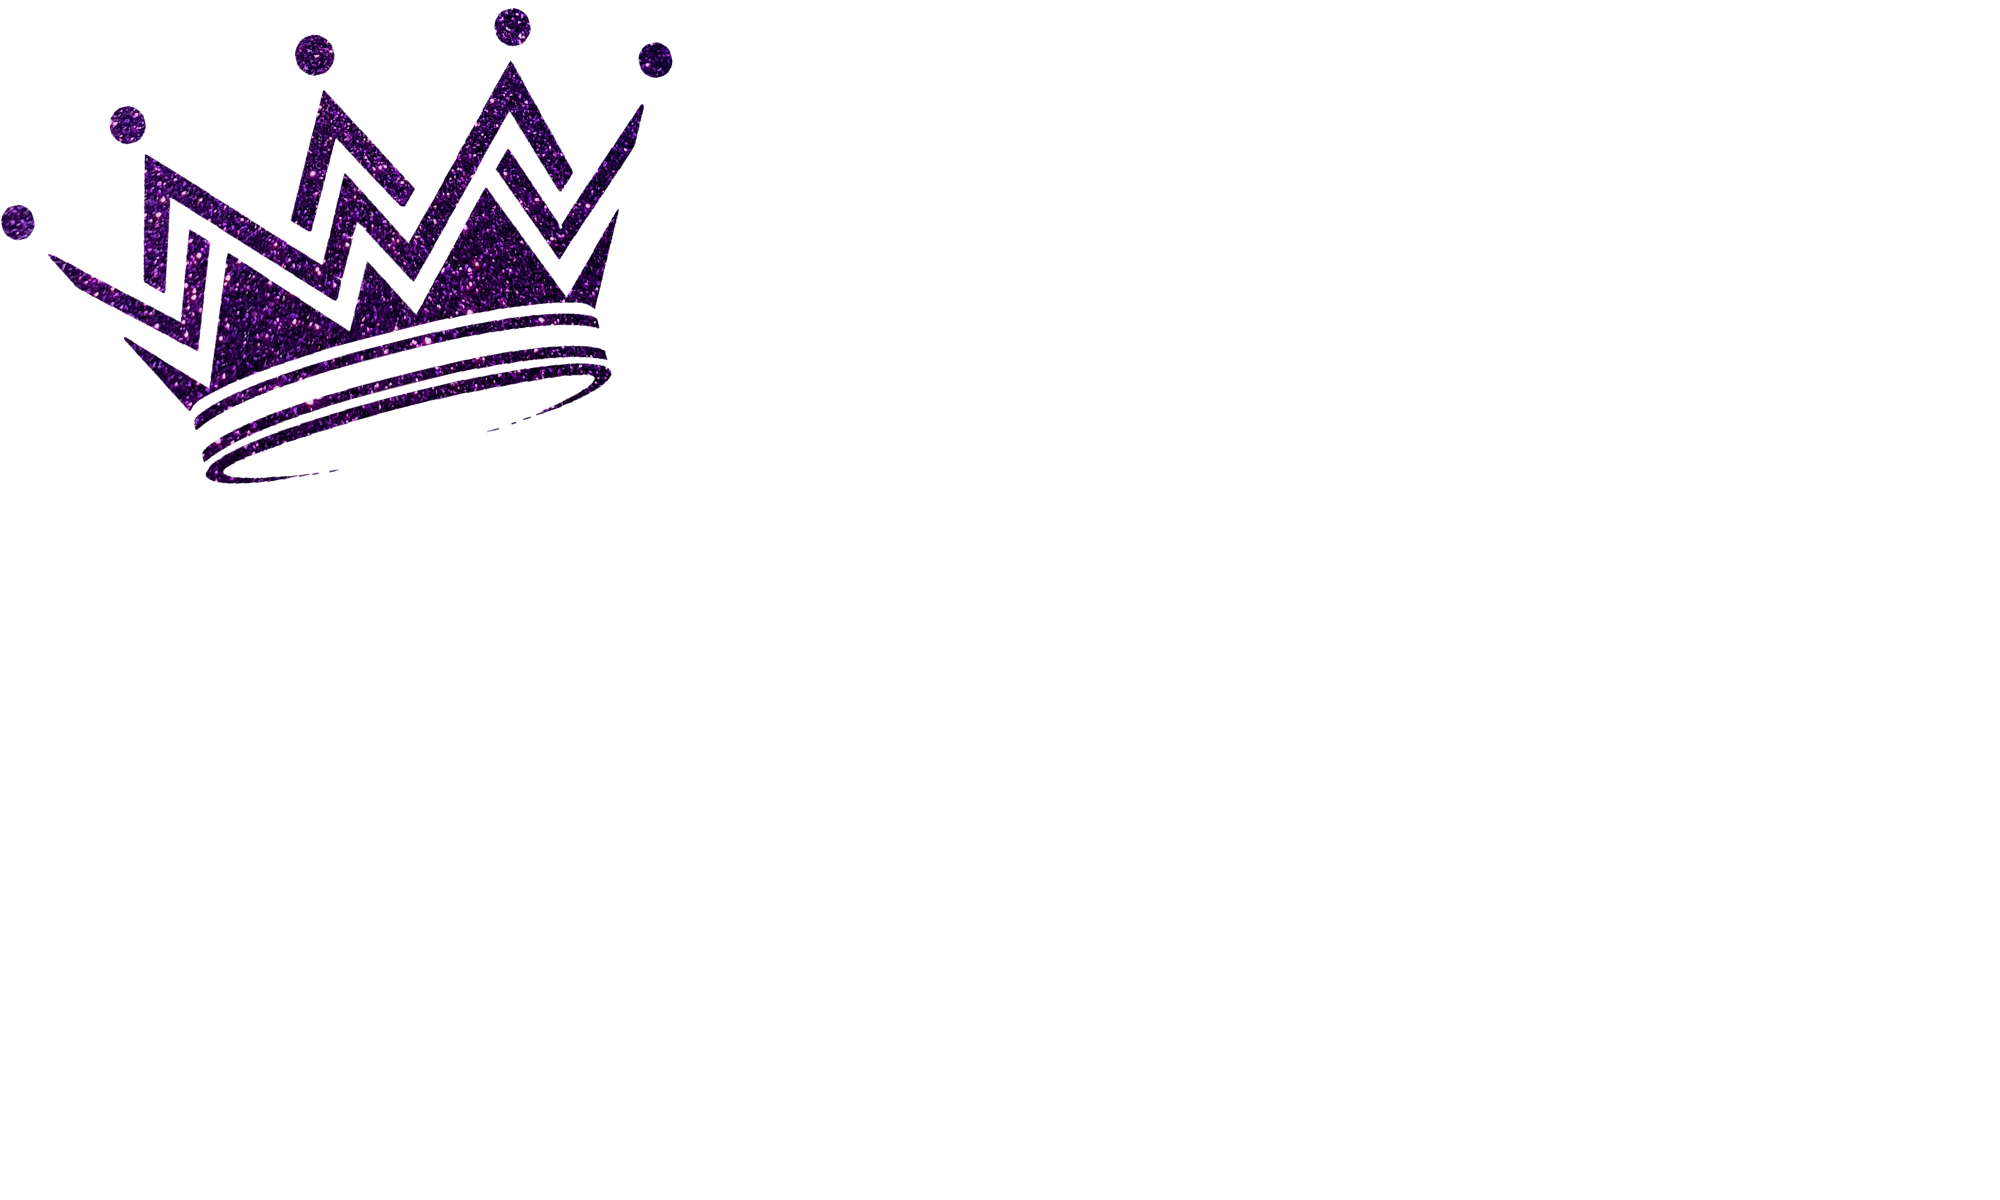 Dancing Queen Crown Sticker - Dancing Queen Crown Queen - Discover